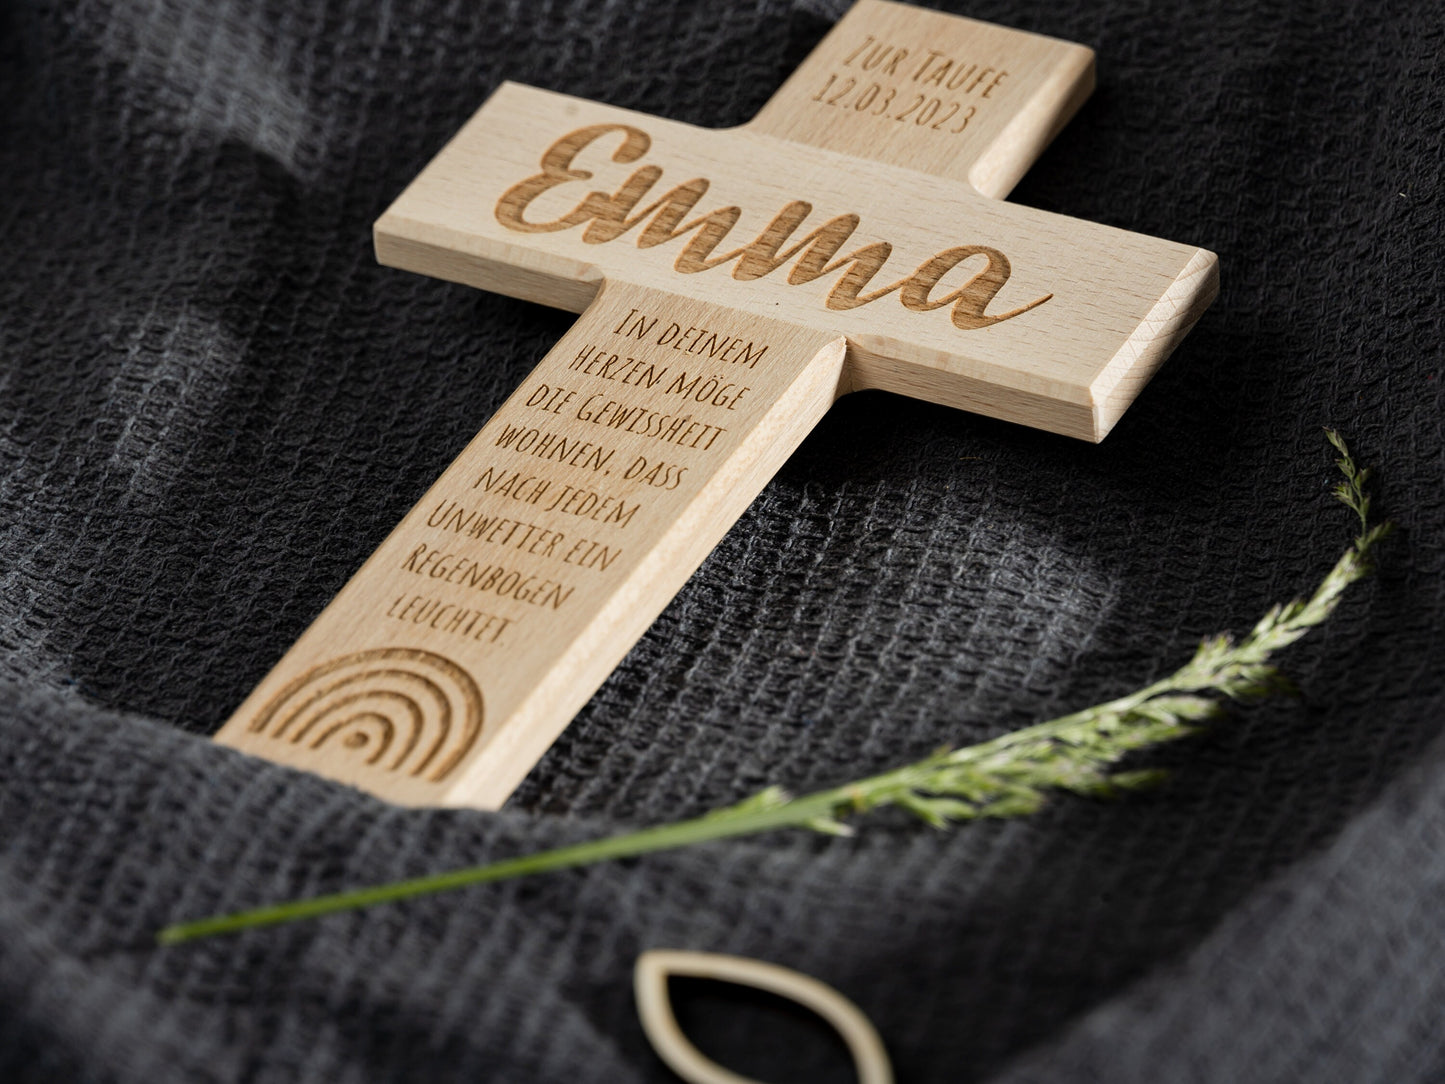 TAUFKREUZ, Geschenk zur Taufe, 20x12 cm, personalisiert, Name, Wunschzitat, Regenbogen, Taufgeschenk, schlichtes Holzkreuz, Kinderkreuz